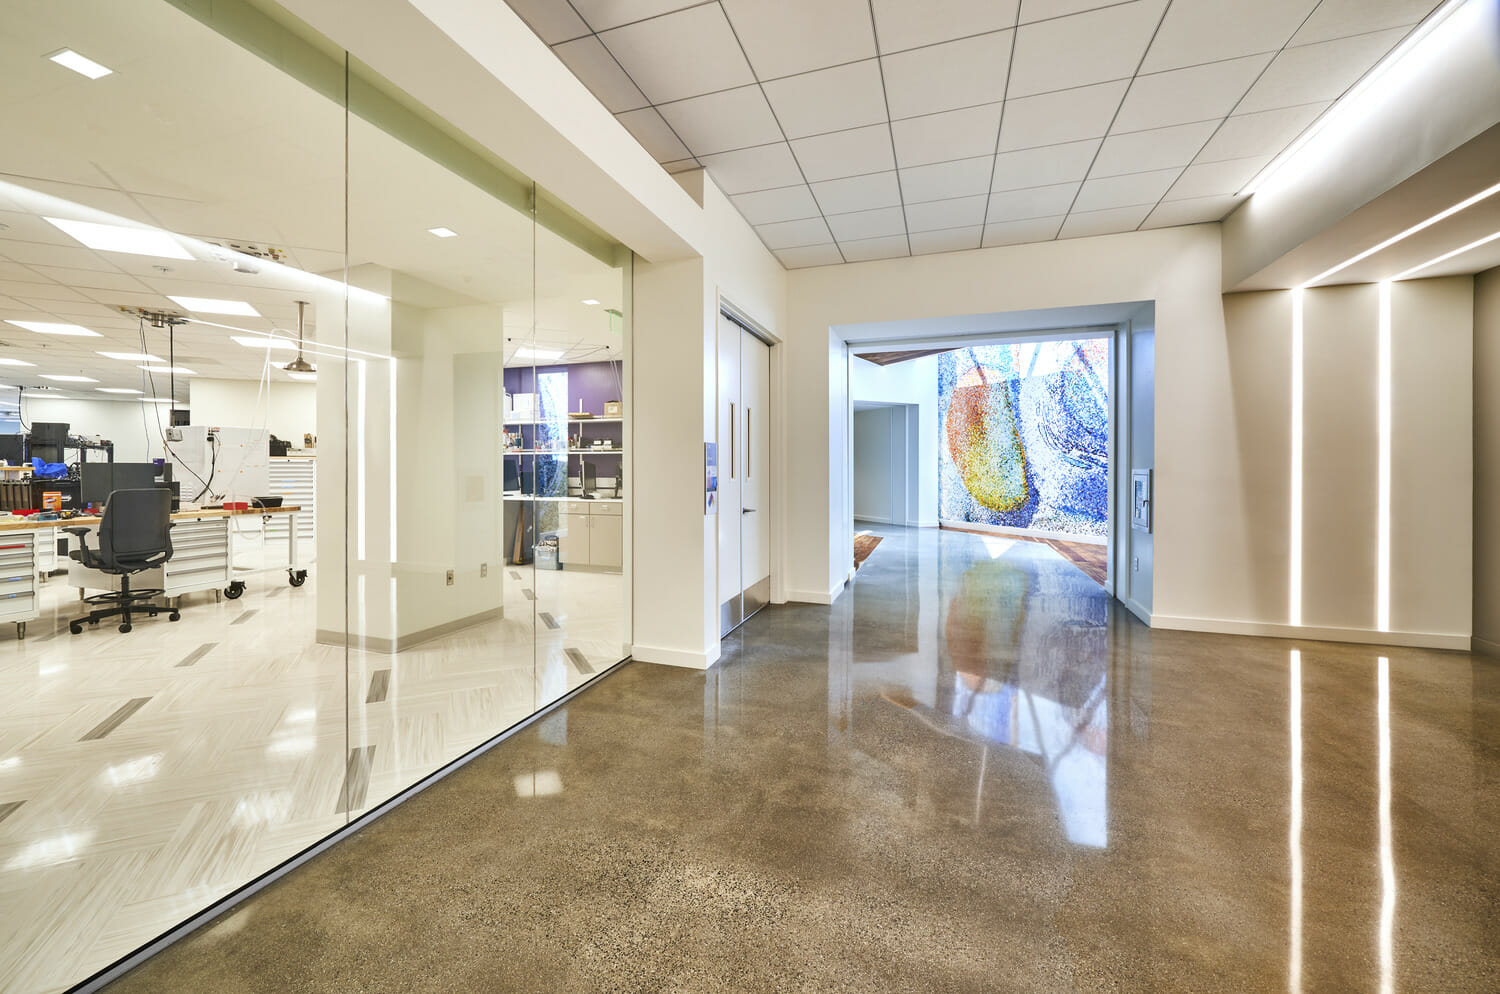 Un couloir dans un cabinet médical avec des murs en verre.